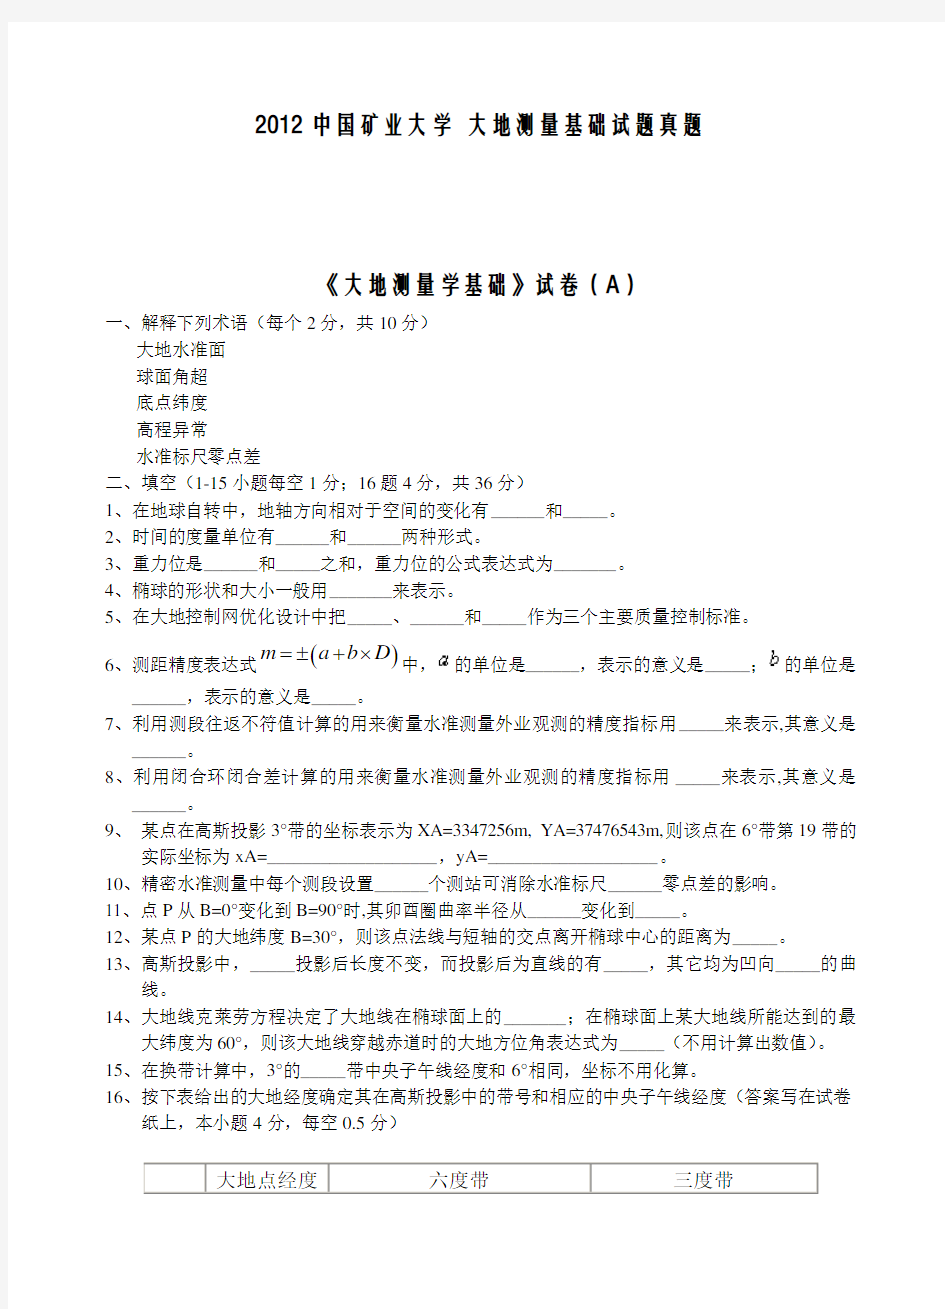 (完整)中国矿业大学《大地测量学基础》试卷(A)含答案,推荐文档